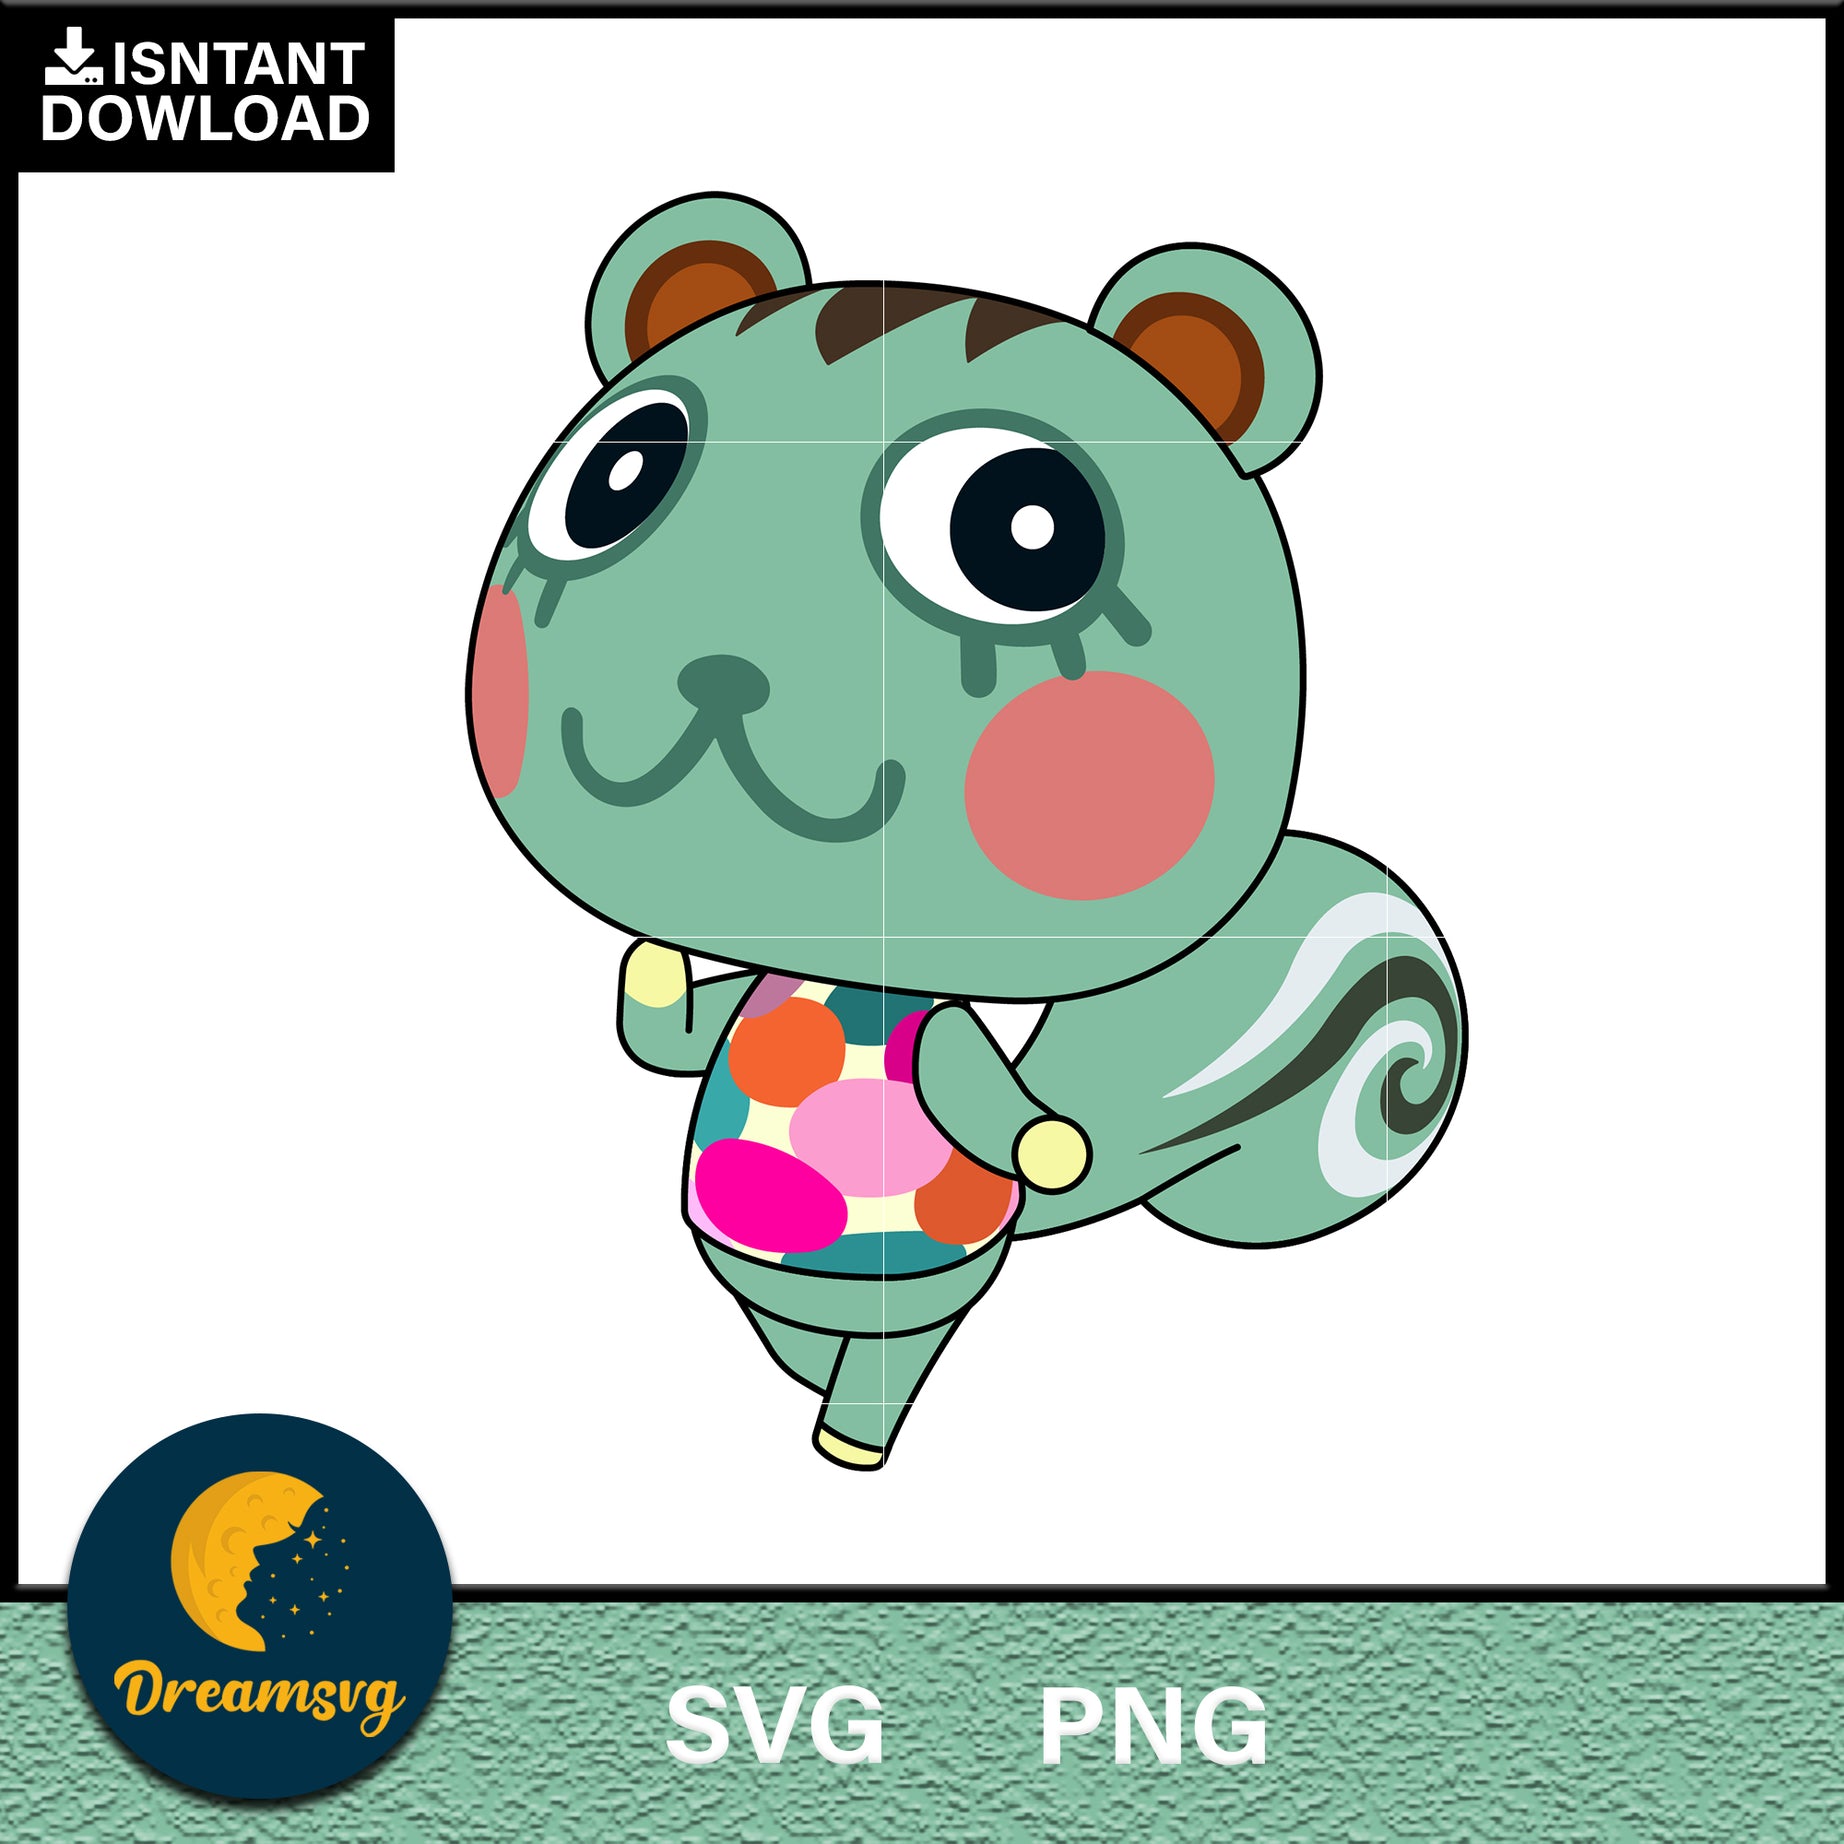 Mint Animal Crossing Svg, Animal Crossing Svg, Animal Crossing Png, Cartoon svg, svg, png digital file